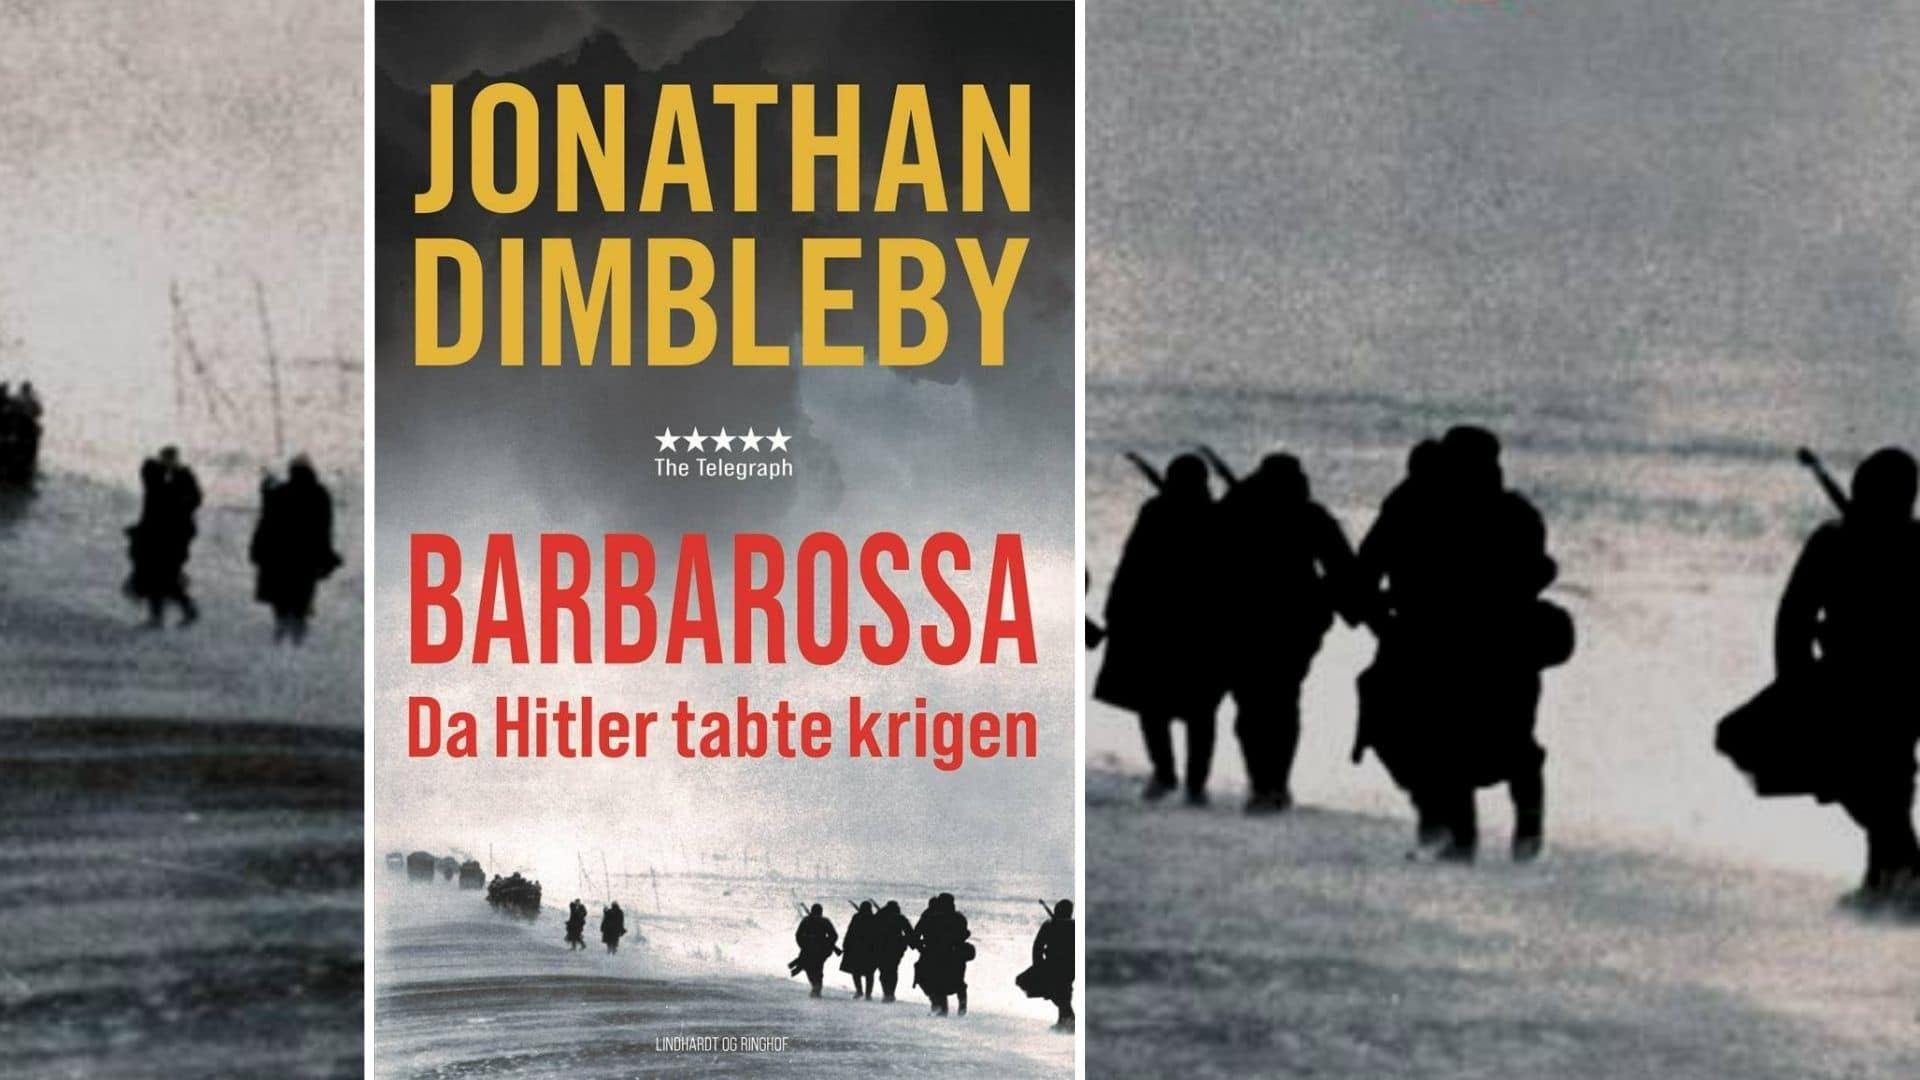 barbarossa, bøger 2. verdenskrig, boger anden verdenskrig, jonathan dimbleby